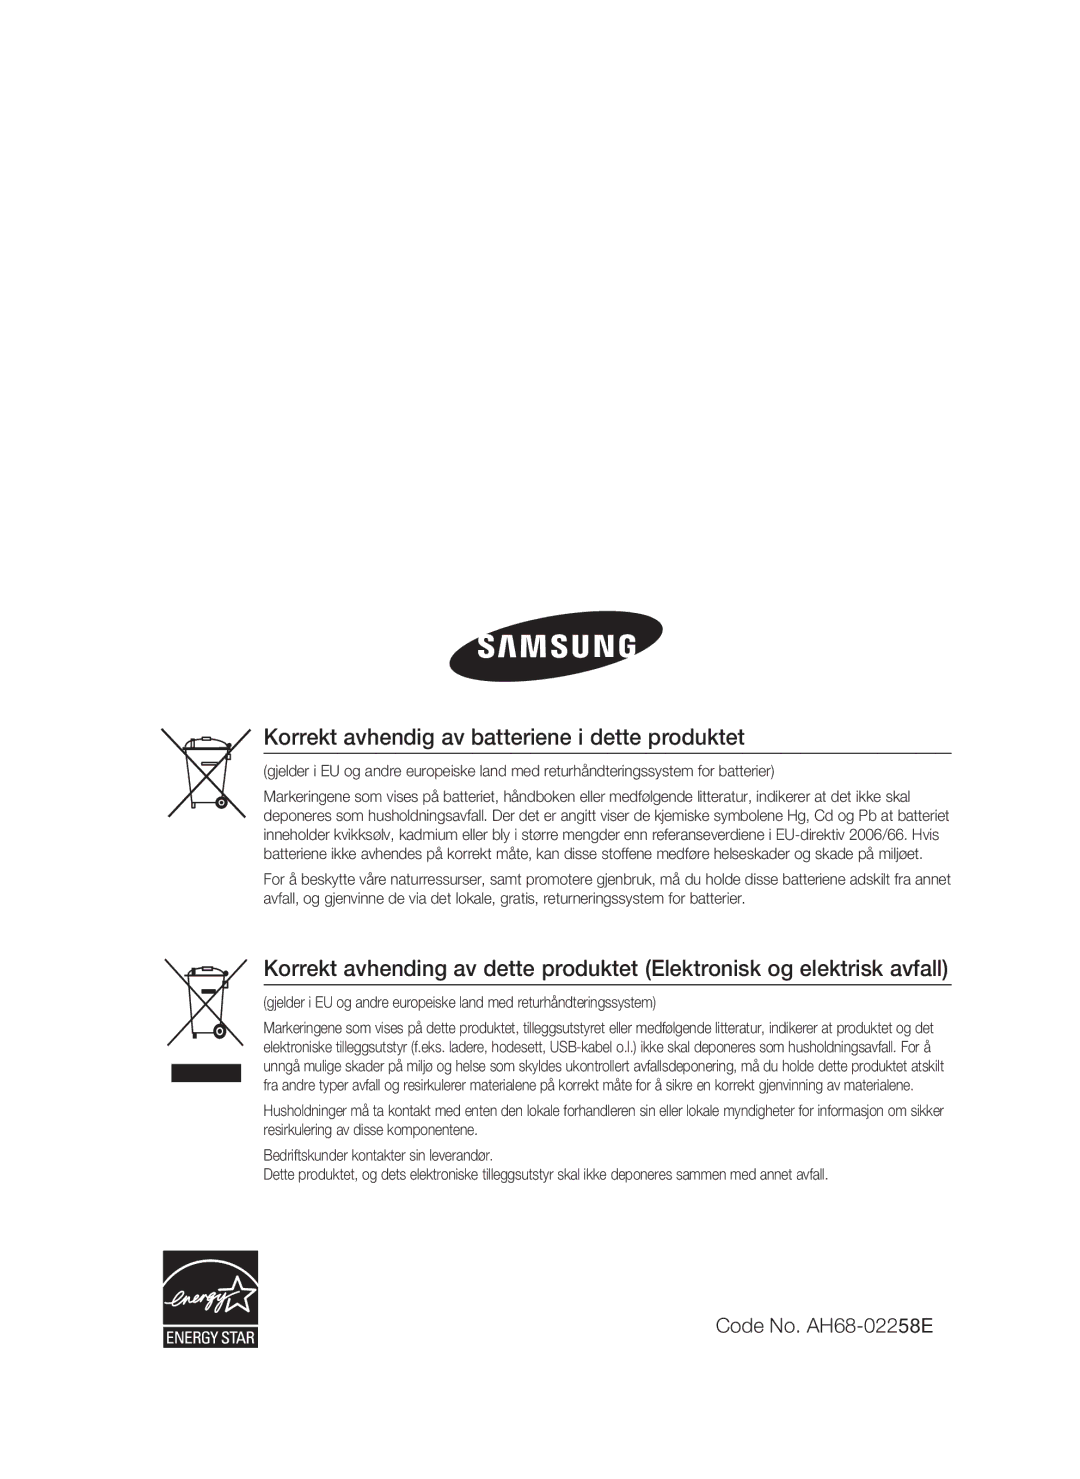 Samsung HT-C5550/XEE, HT-C5500/XEE, HT-C5530/XEE manual Korrekt avhendig av batteriene i dette produktet 